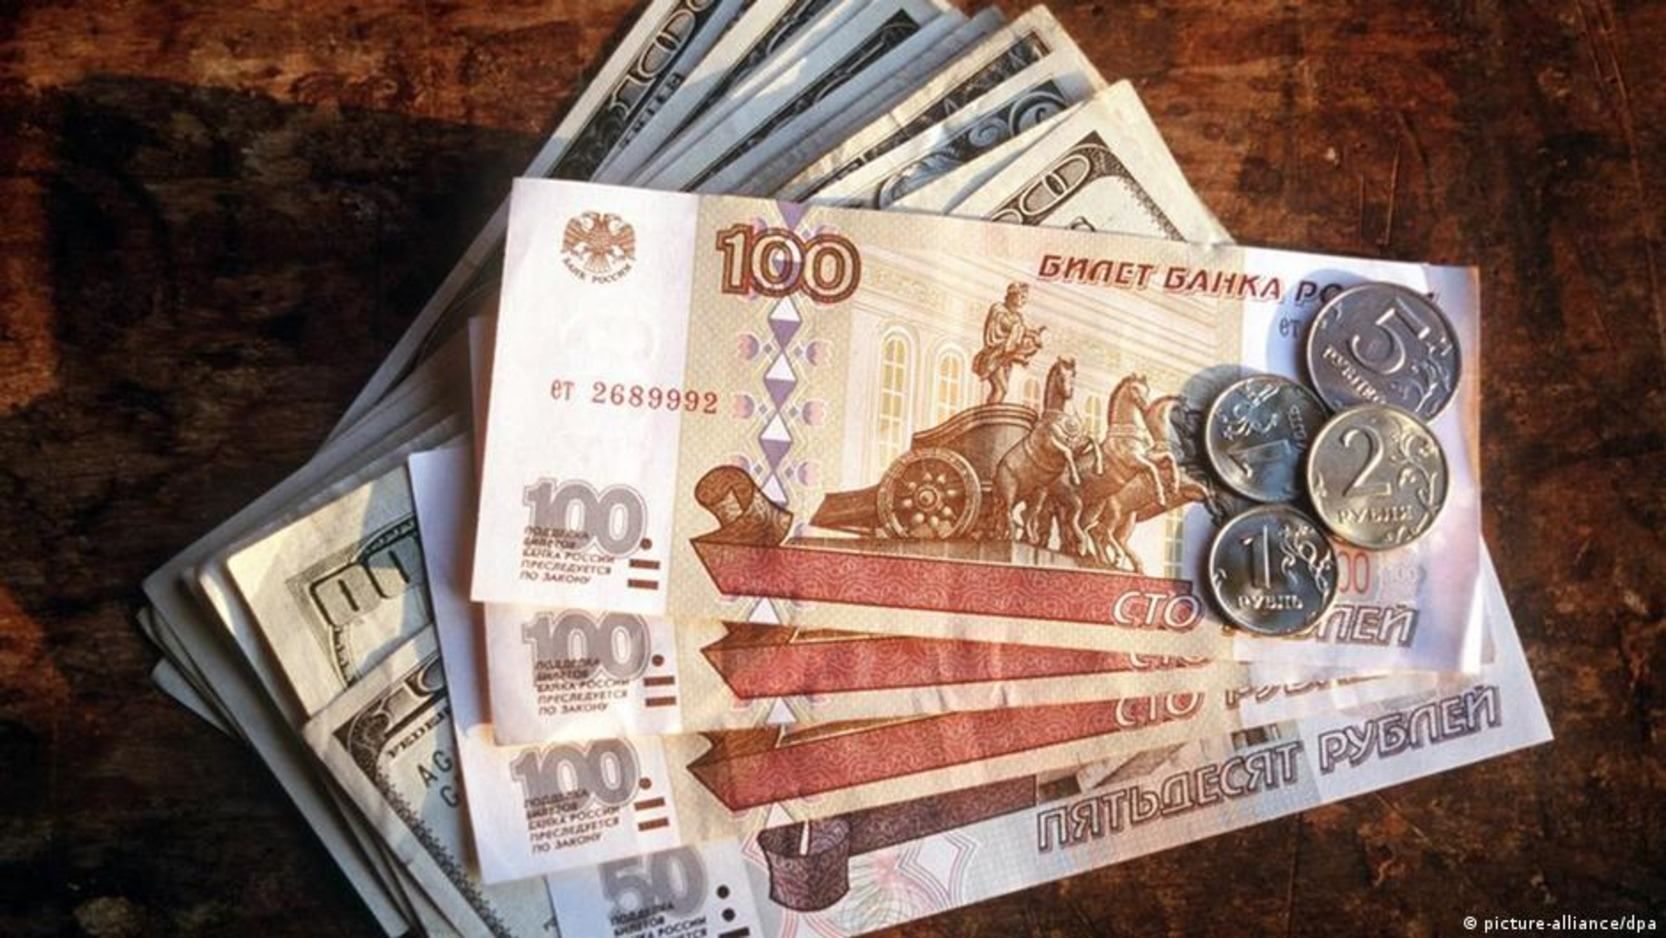 Нацбанк запретил принимать рубли для зачисления на депозитные счета